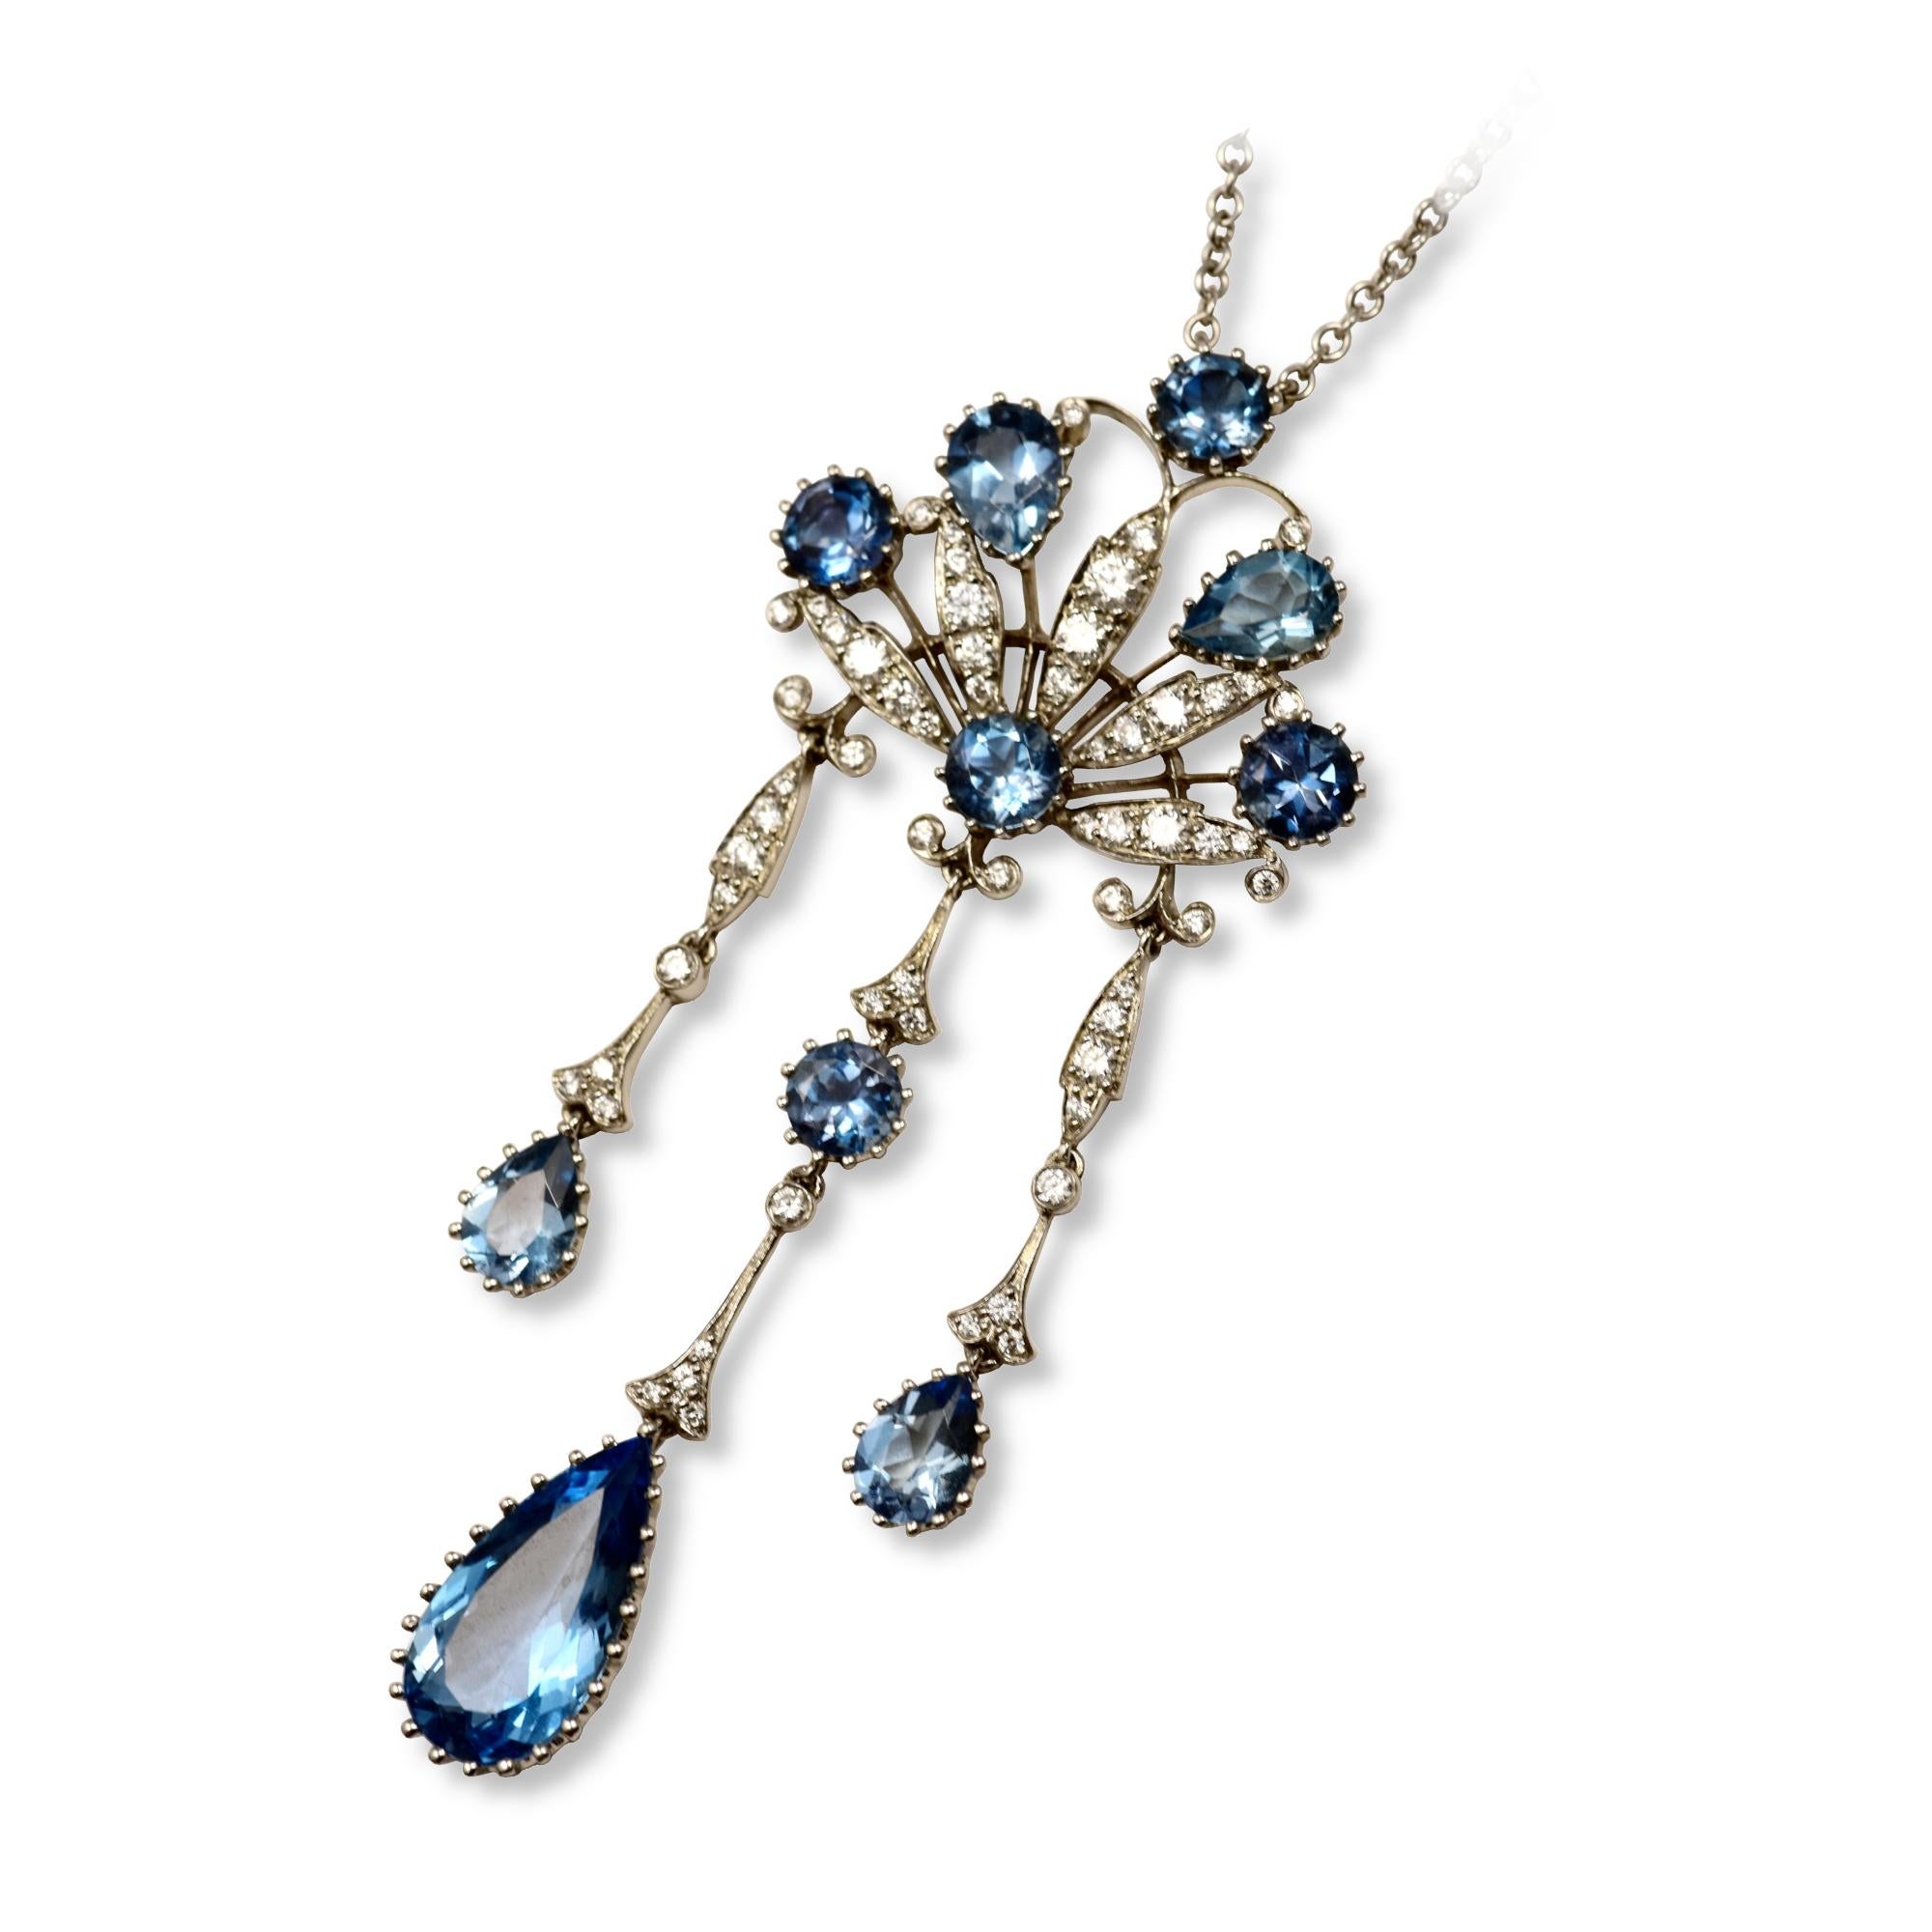 Marque : Tiffany & Co.

Style : Collier à pendentif 

Métal : Platine  

Pureté du métal : 950

Pierre : Diamants ronds taille brillant

               Aigue-marine ronde et en forme de poire

Longueur de la chaîne : 14,96